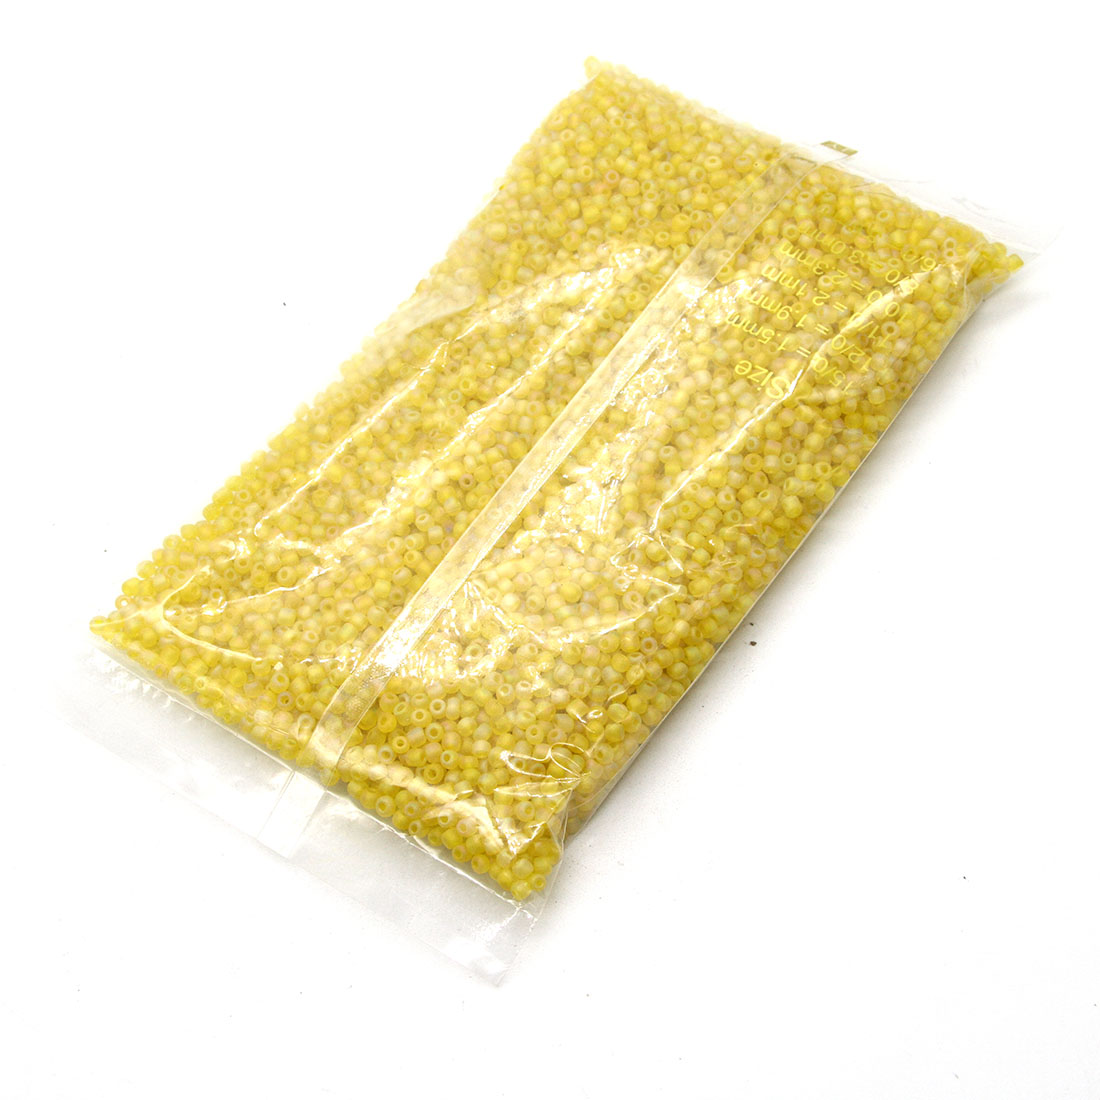 Medium yellow 2mm 30,000 packs